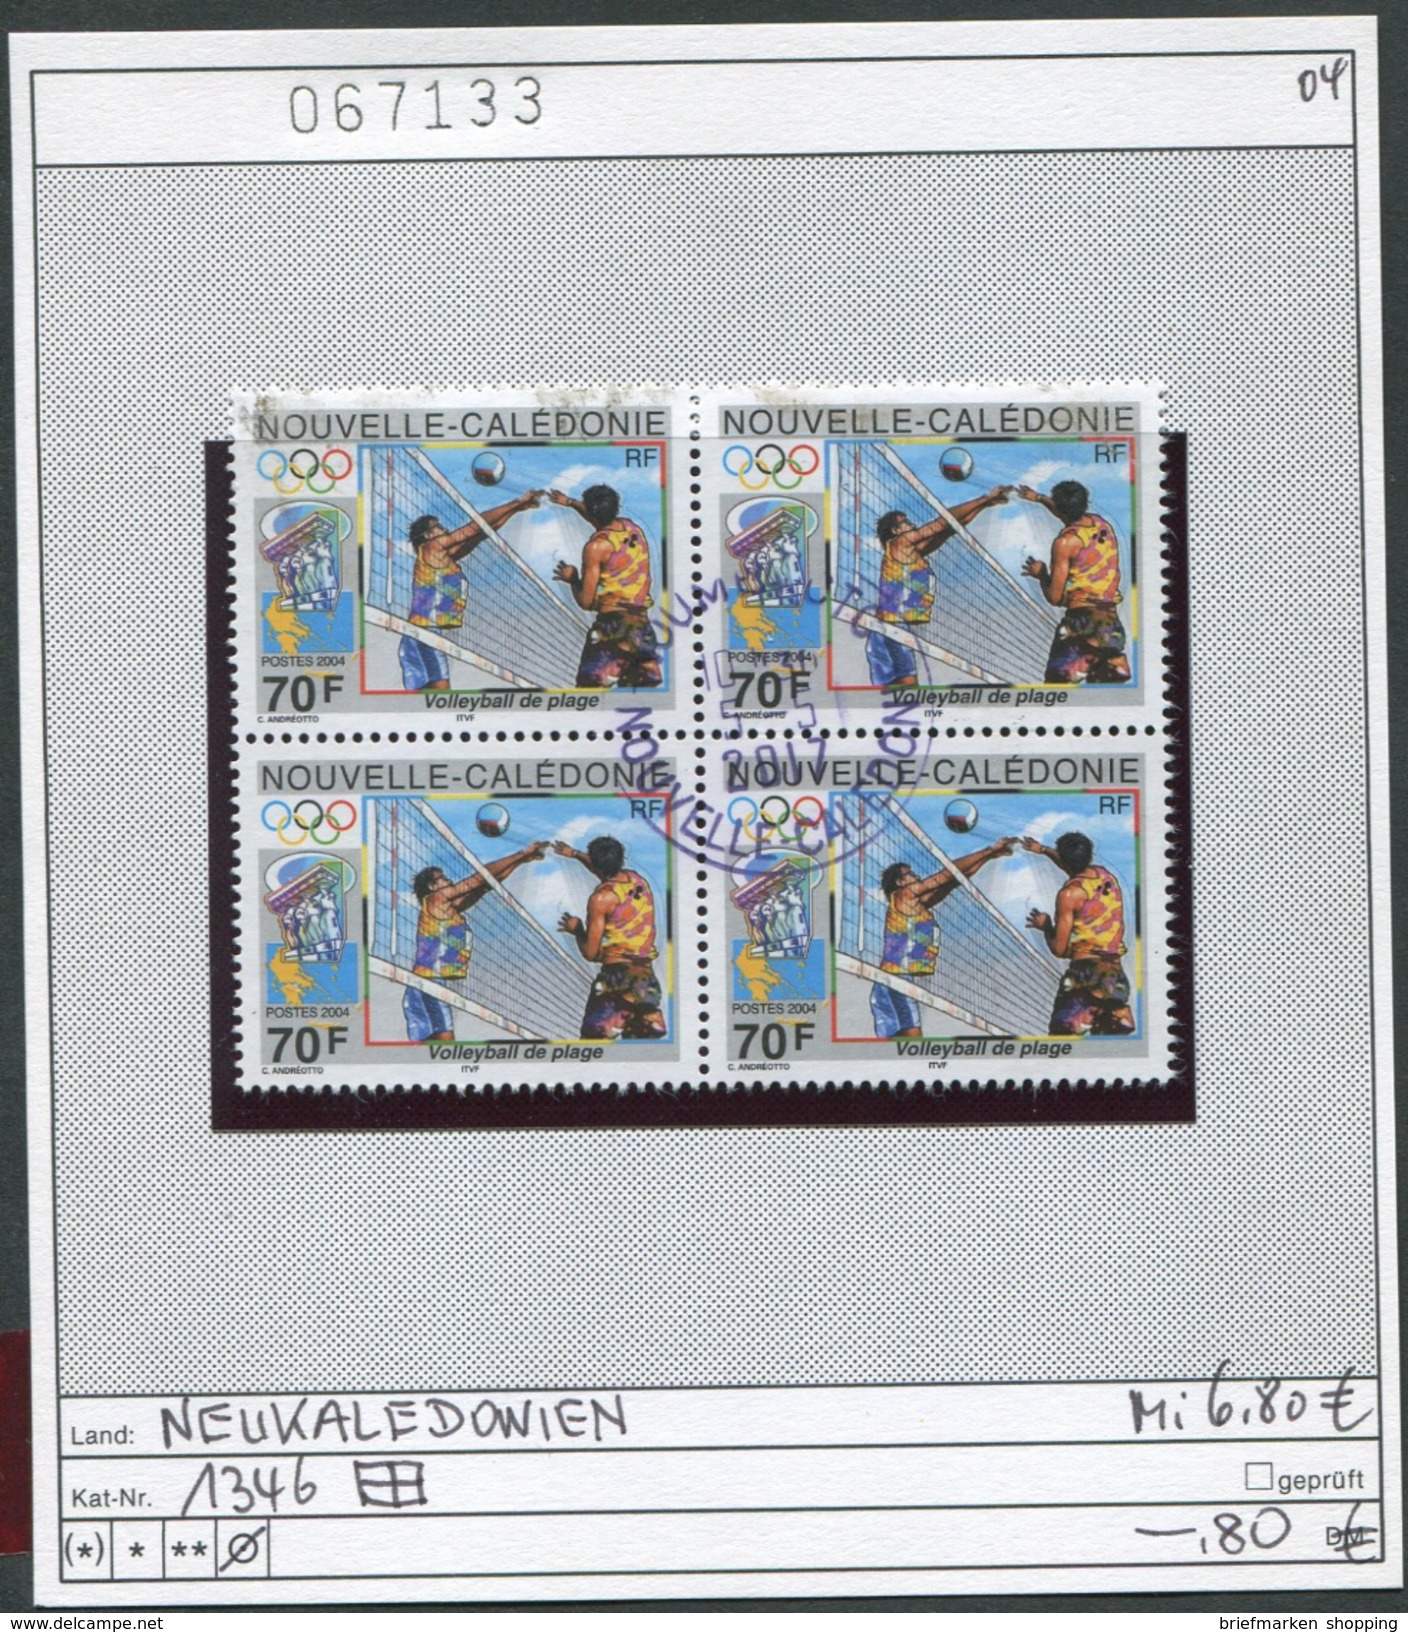 Neukaledonien 2004 - Nouvelle Caledonie 2004 - Michel 1346 Im Viererblock - Oo Oblit. Used Gebruikt - Gebruikt